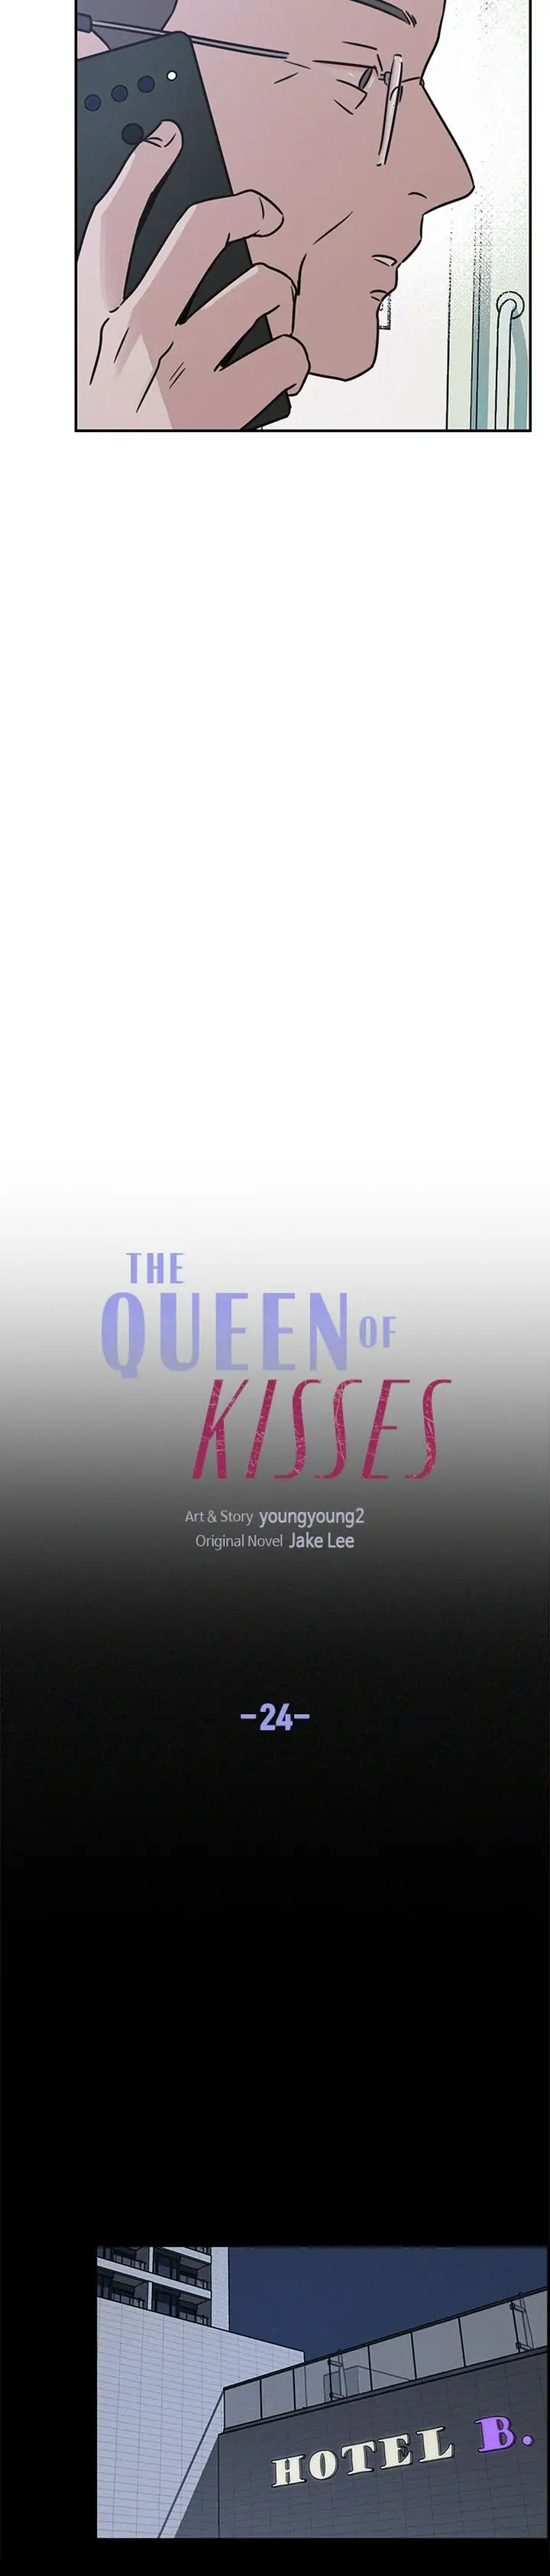 Queen Of Kisses chapter 24